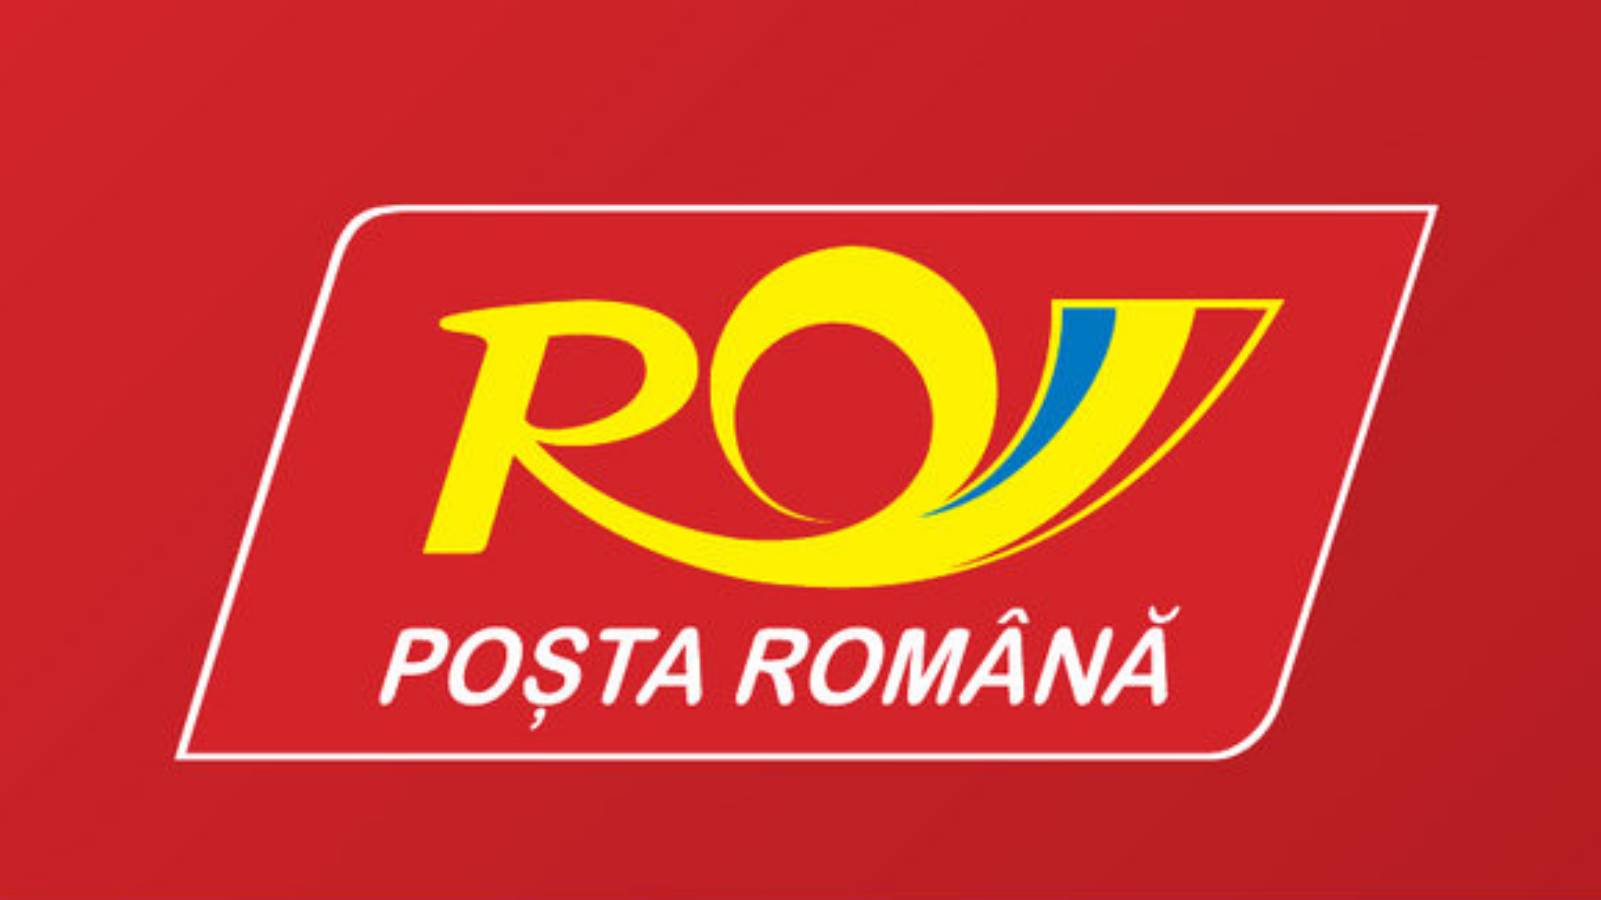 Expédition de la poste roumaine en Italie